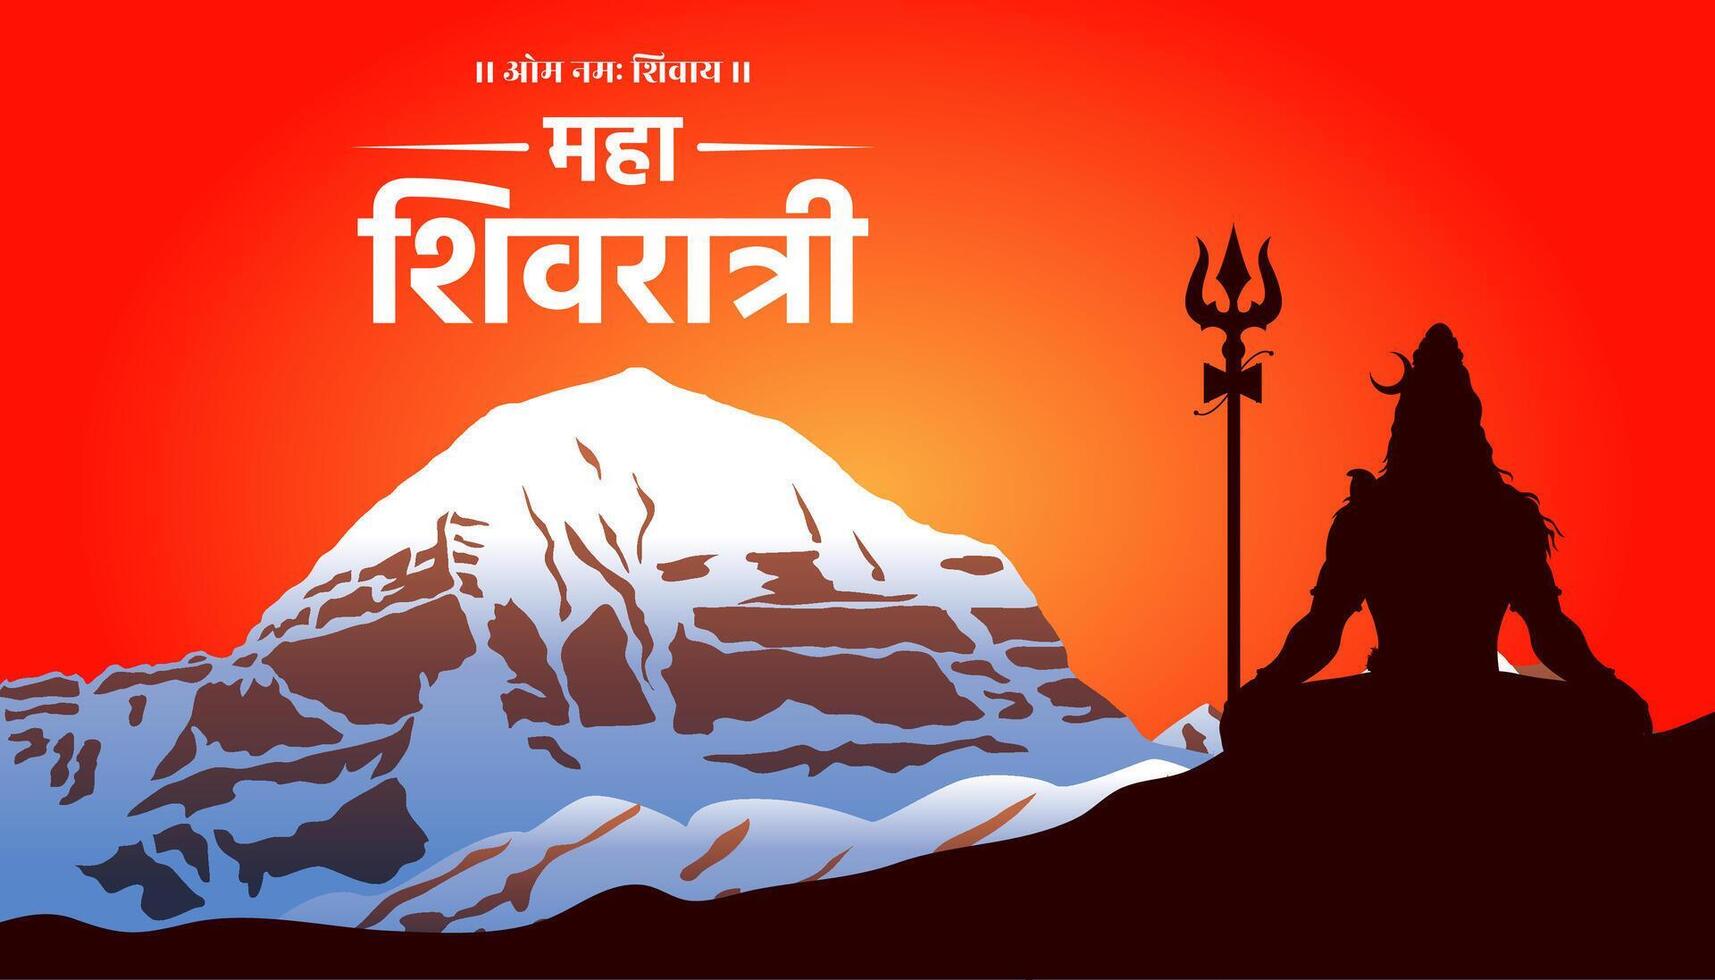 maha shivratri festival zegeningen kaart ontwerp Kailash berg achtergrond sjabloon vector